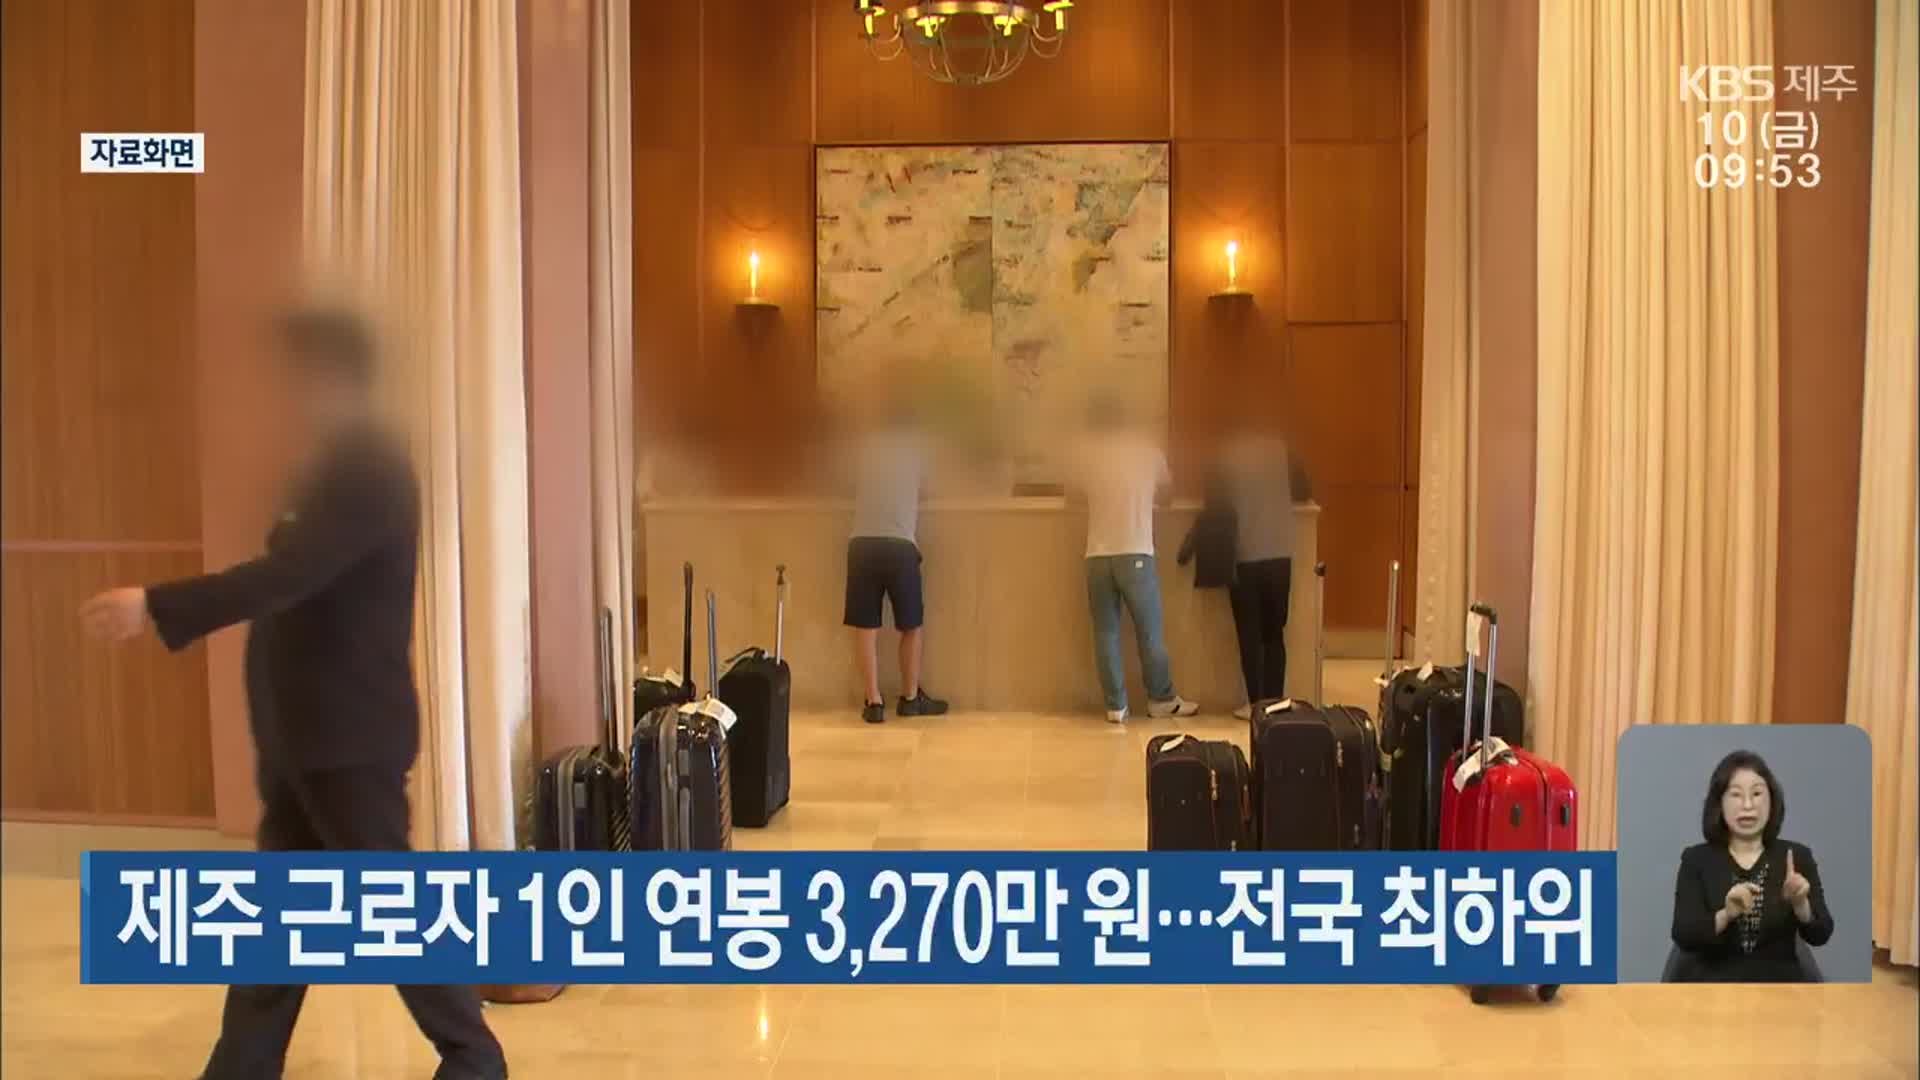 제주 근로자 1인 연봉 3,270만 원…전국 최하위